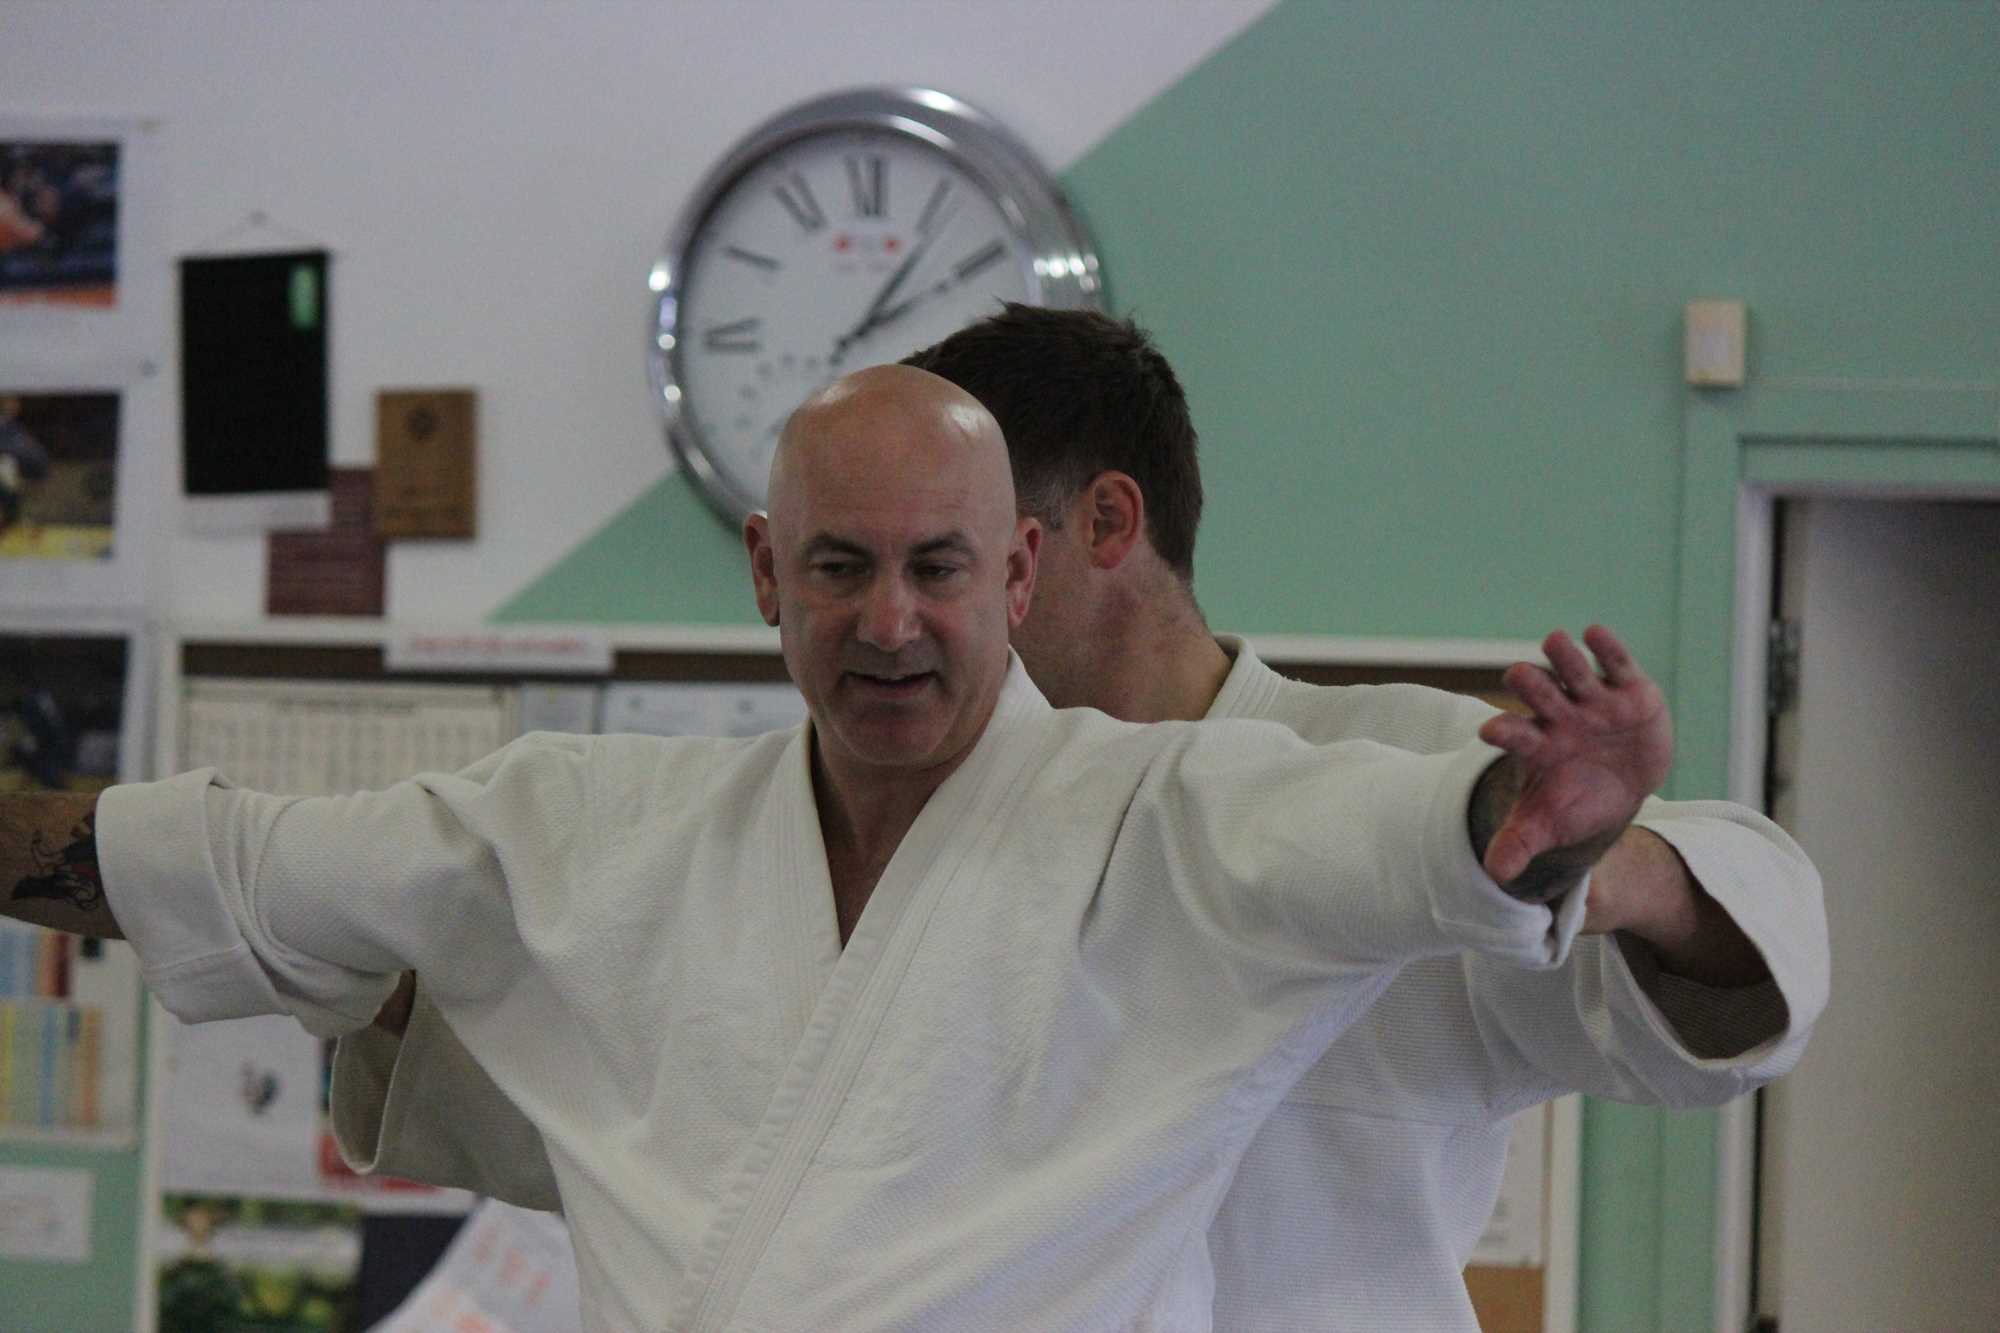 Craig Andrew, Chief Instructor, Aikido Yuishinkai New Zealand